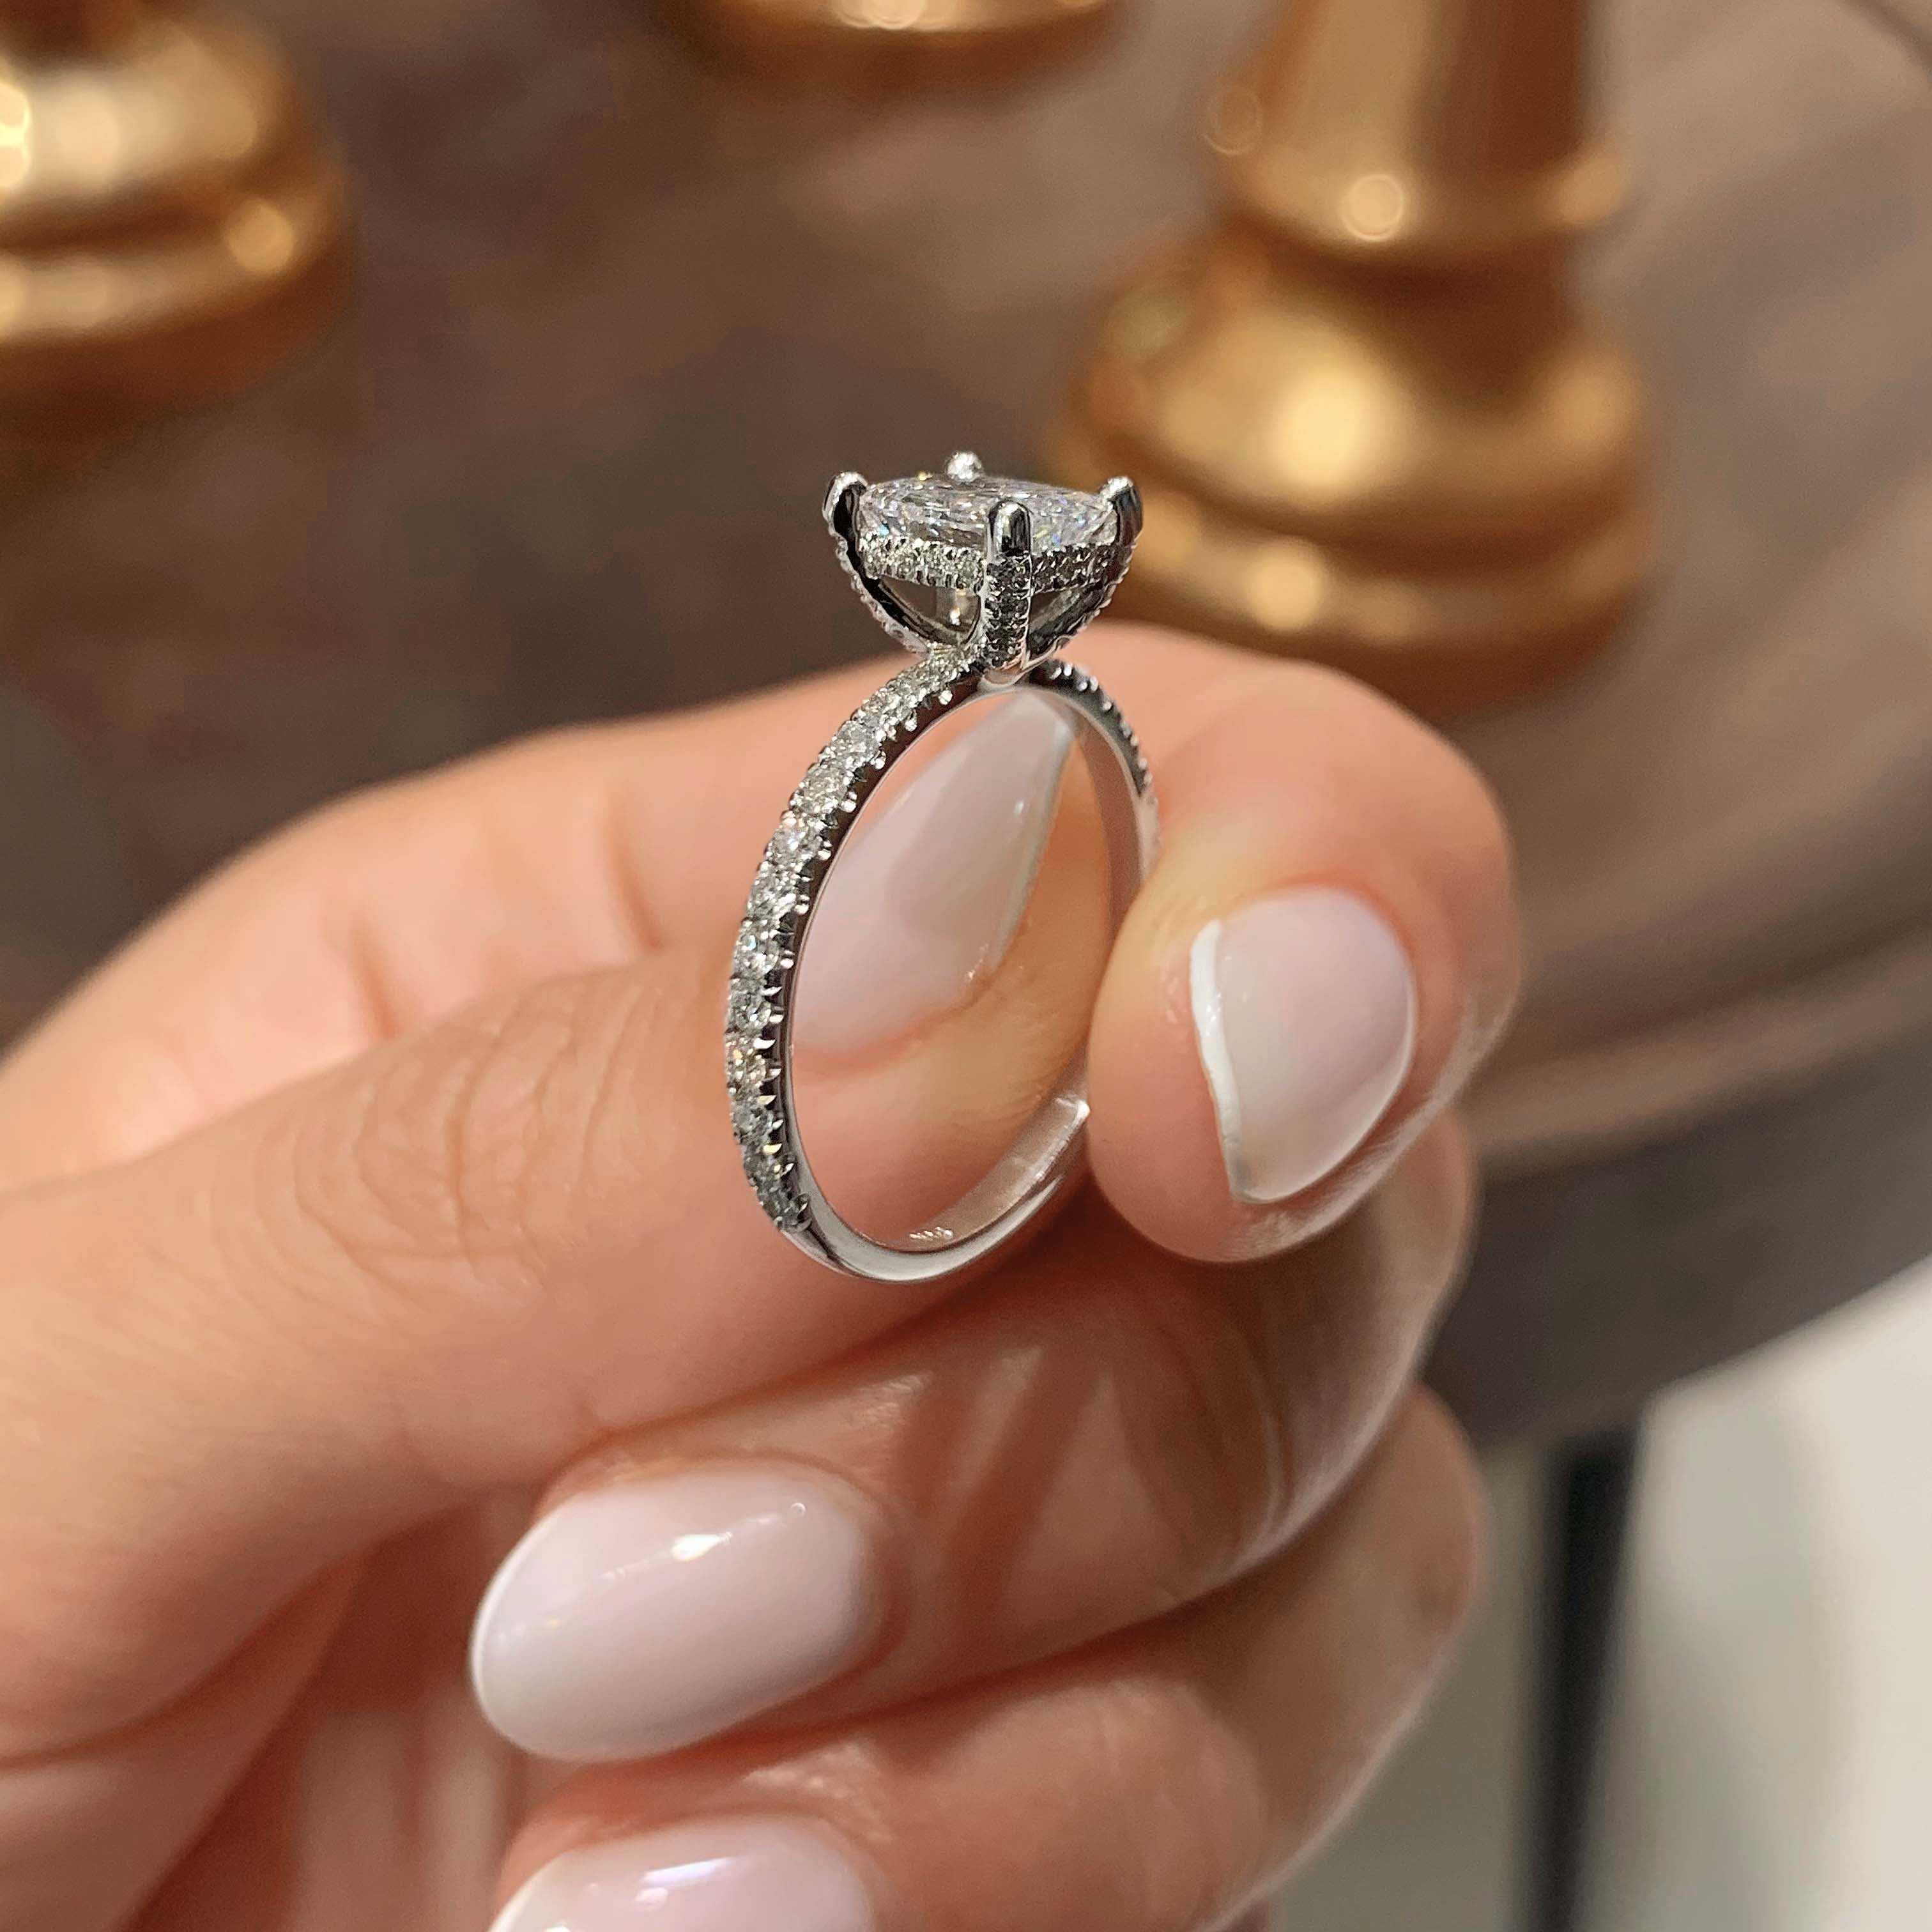 Deborah Diamond Engagement Ring   (1.50 Carat) -14K White Gold